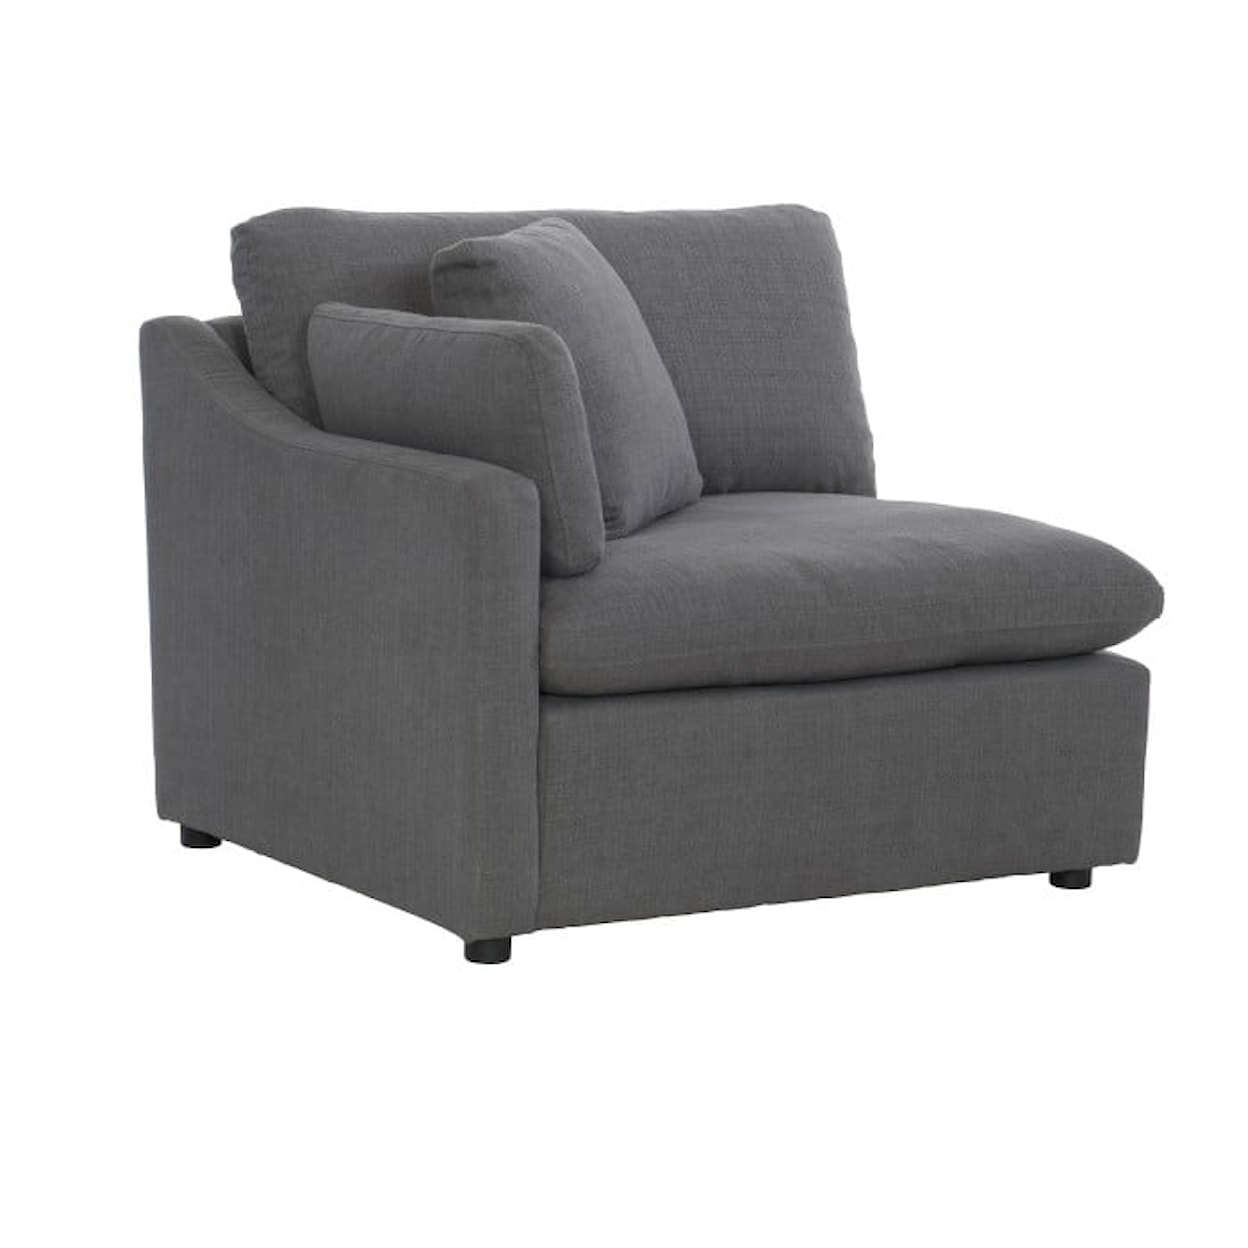 Homelegance Furniture Howerton Lsf Chair, 1 Pillow